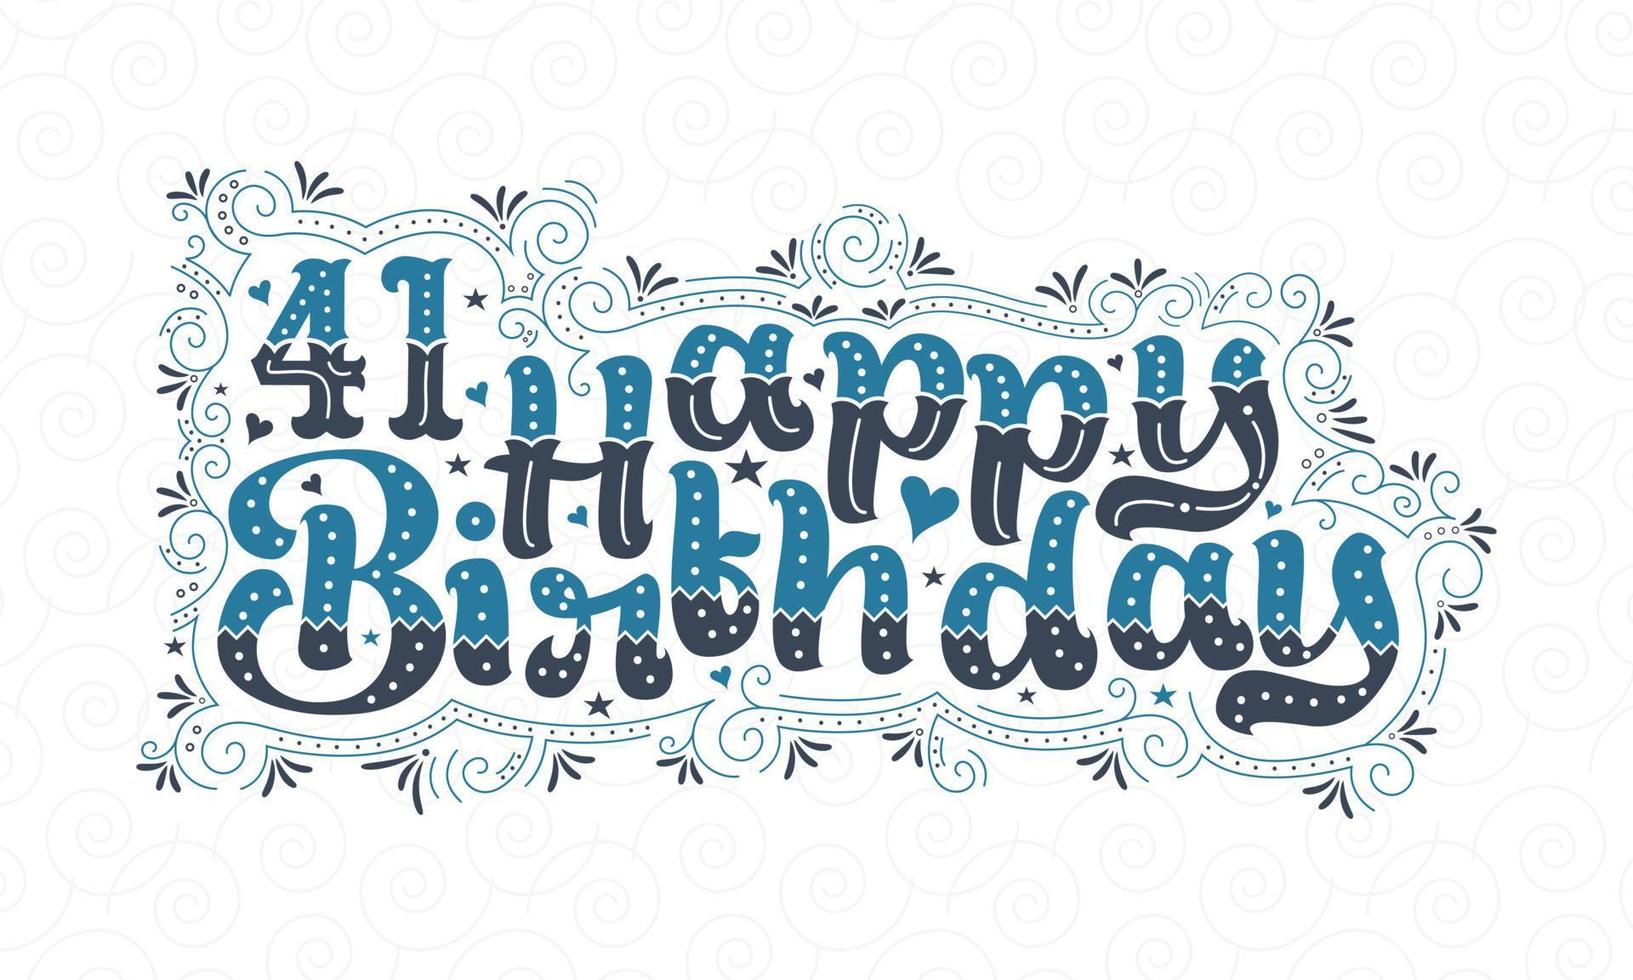 41º letras de feliz aniversário, 41 anos de aniversário lindo design de tipografia com pontos, linhas e folhas azuis e pretos. vetor